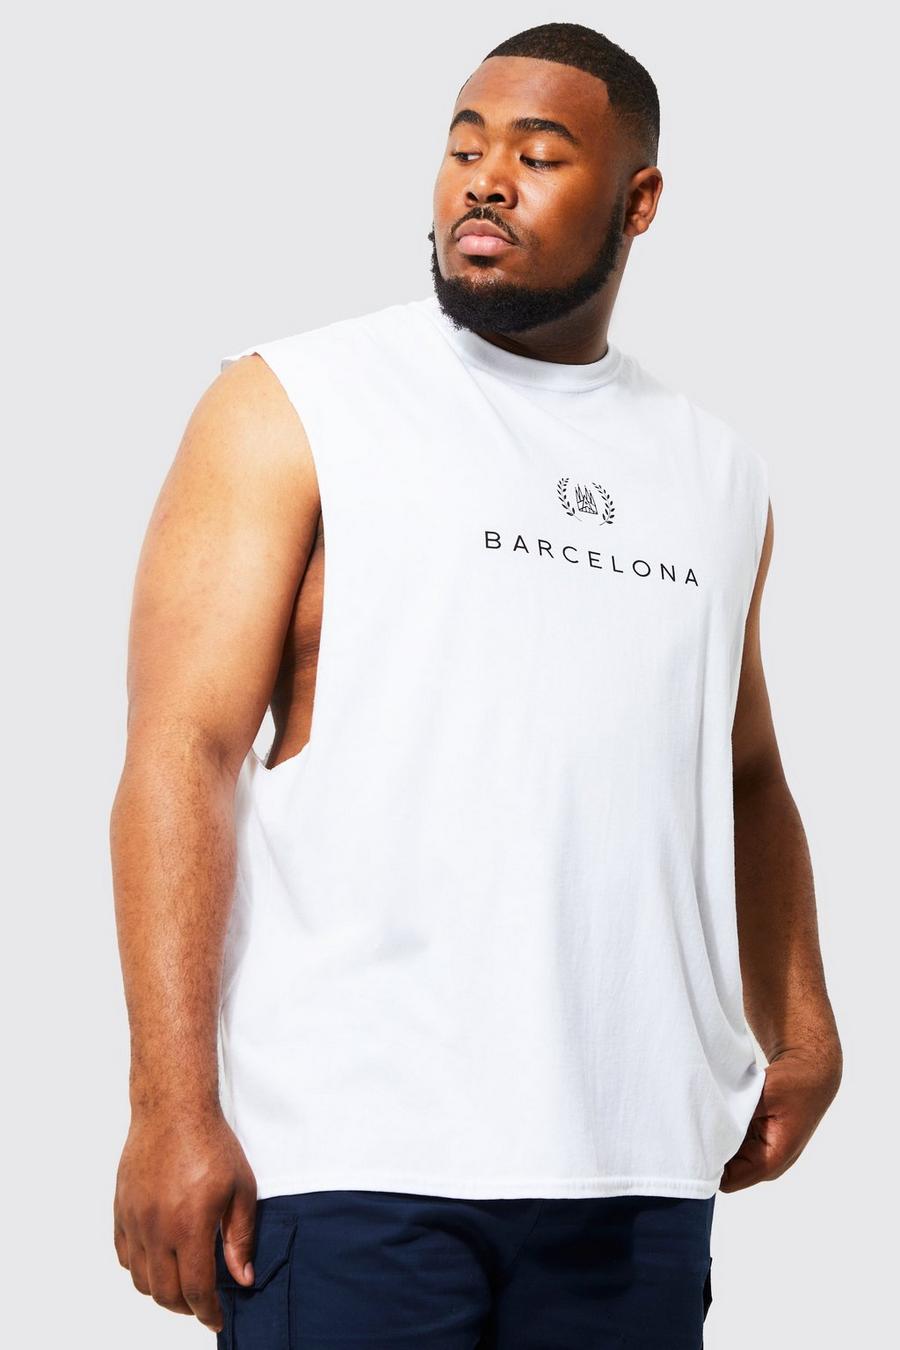 Plus Tanktop mit Barcelona-Print, White blanc